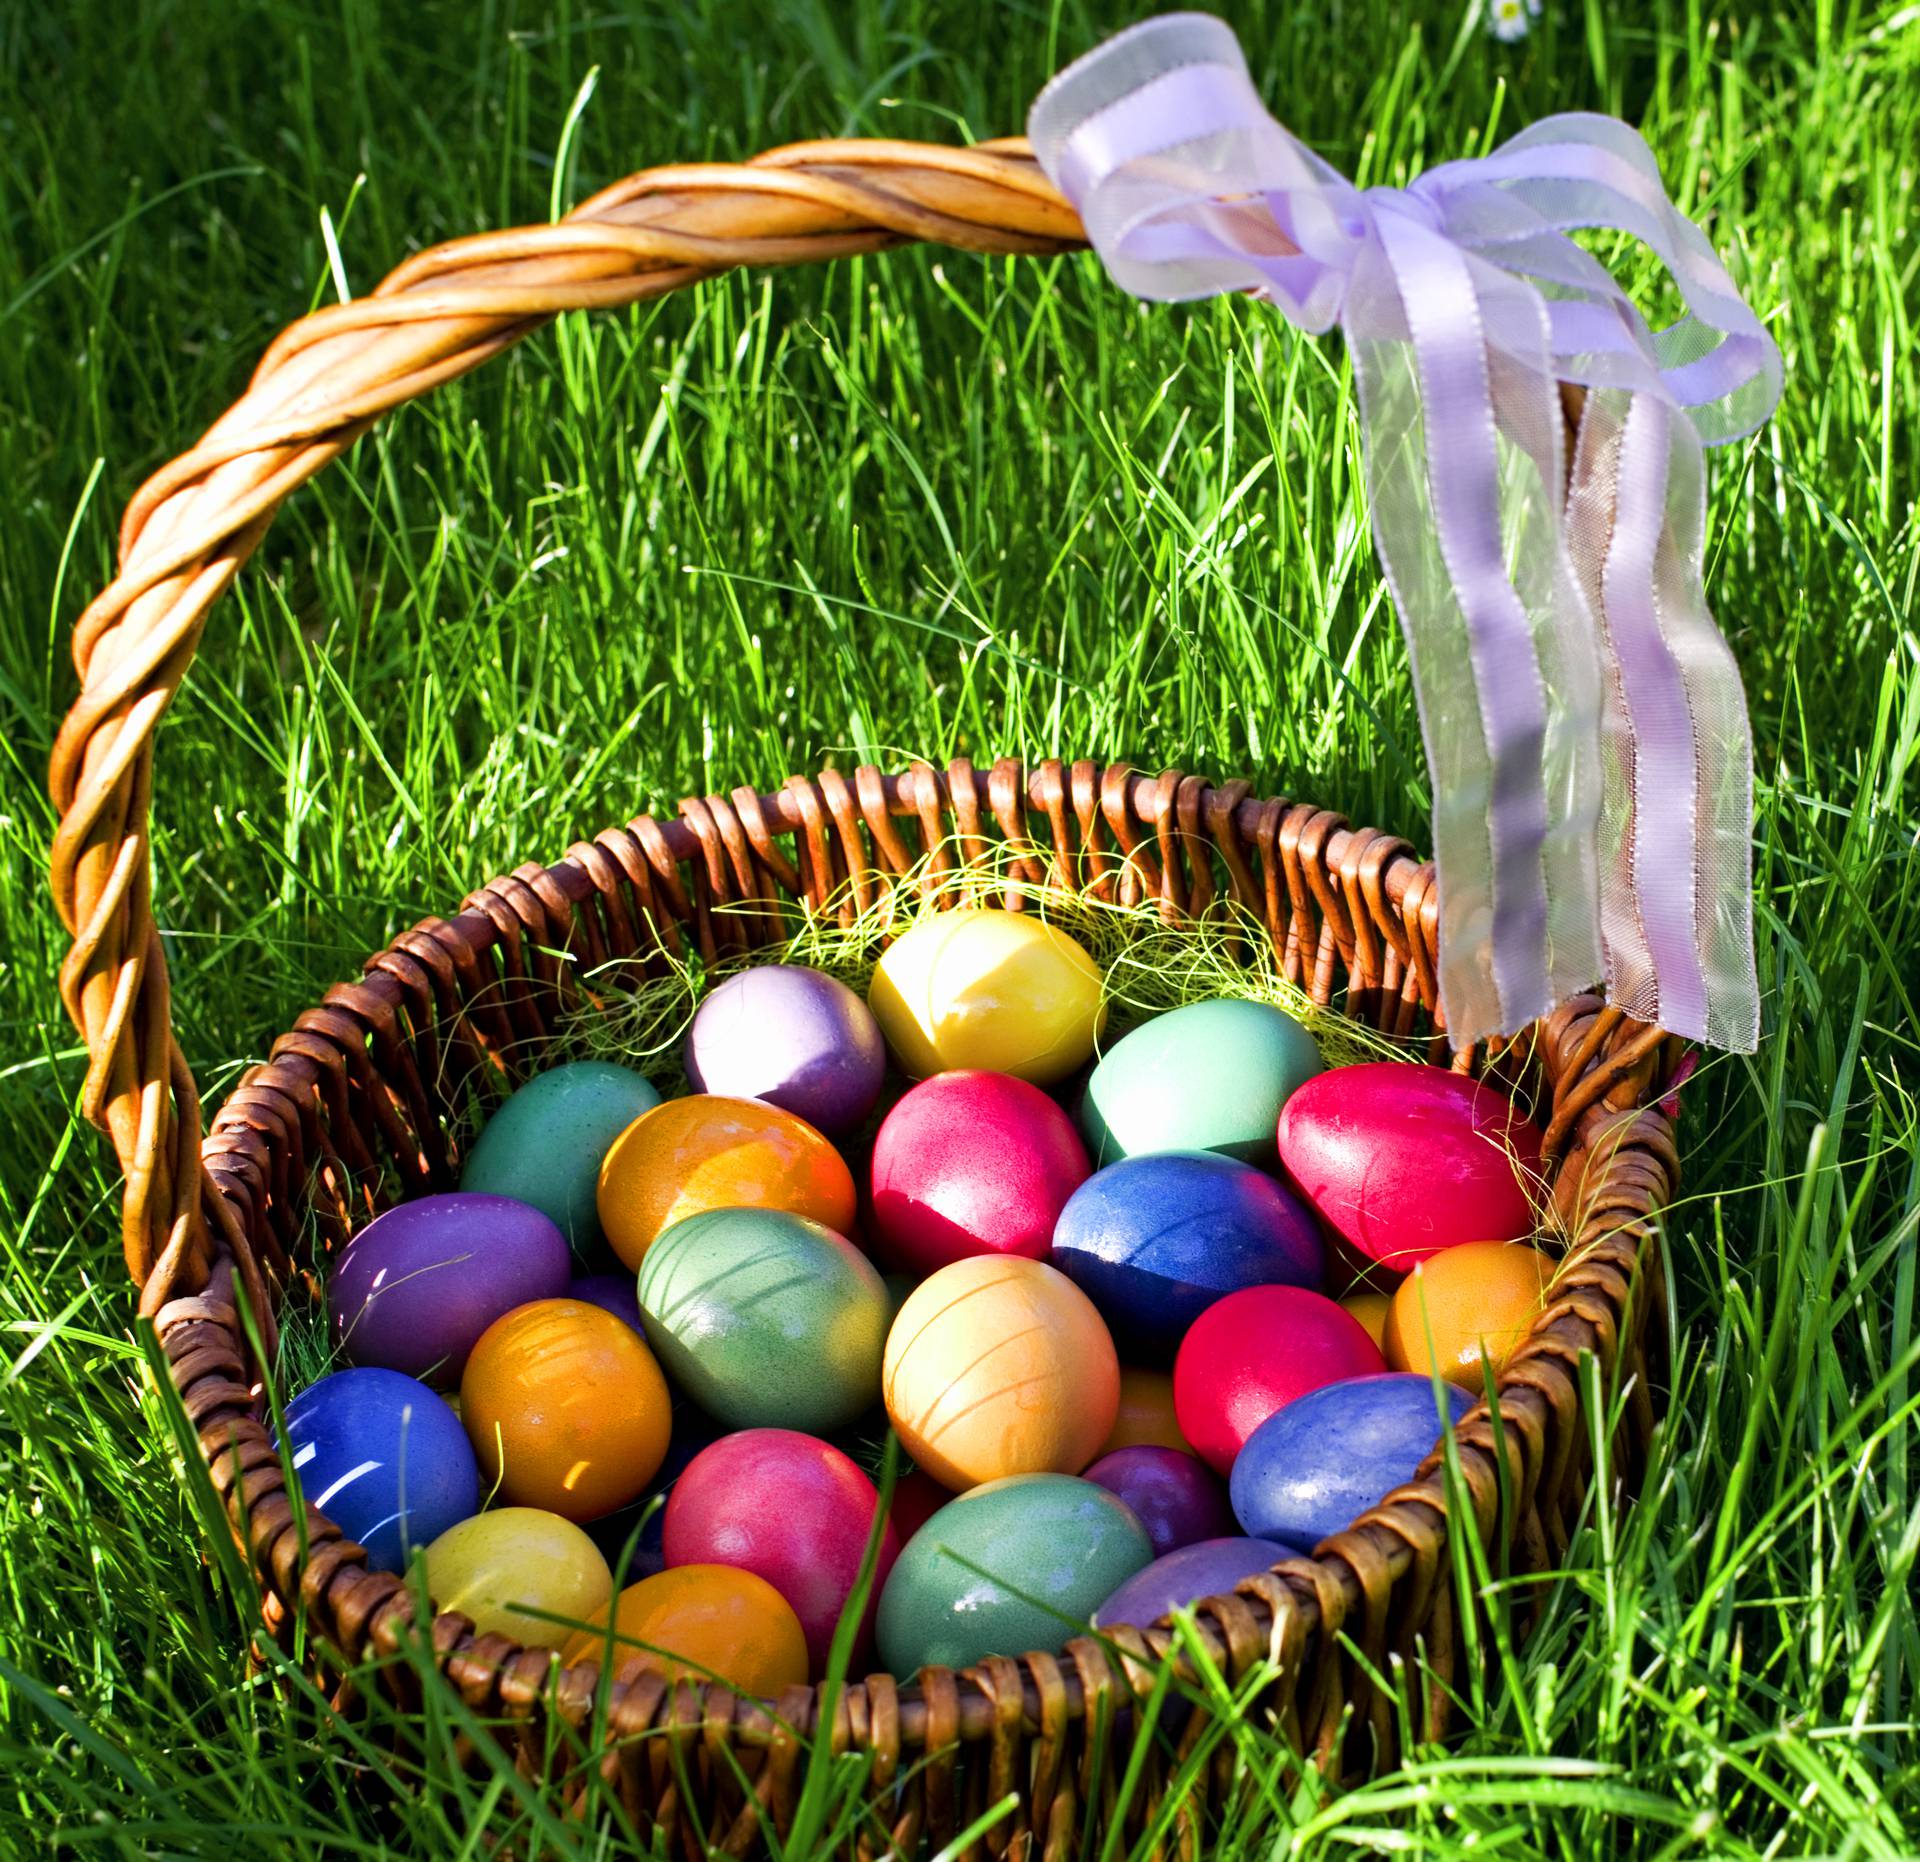 Nepoznato o Uskrsu: Zašto jedemo jaja i šunku na taj dan?